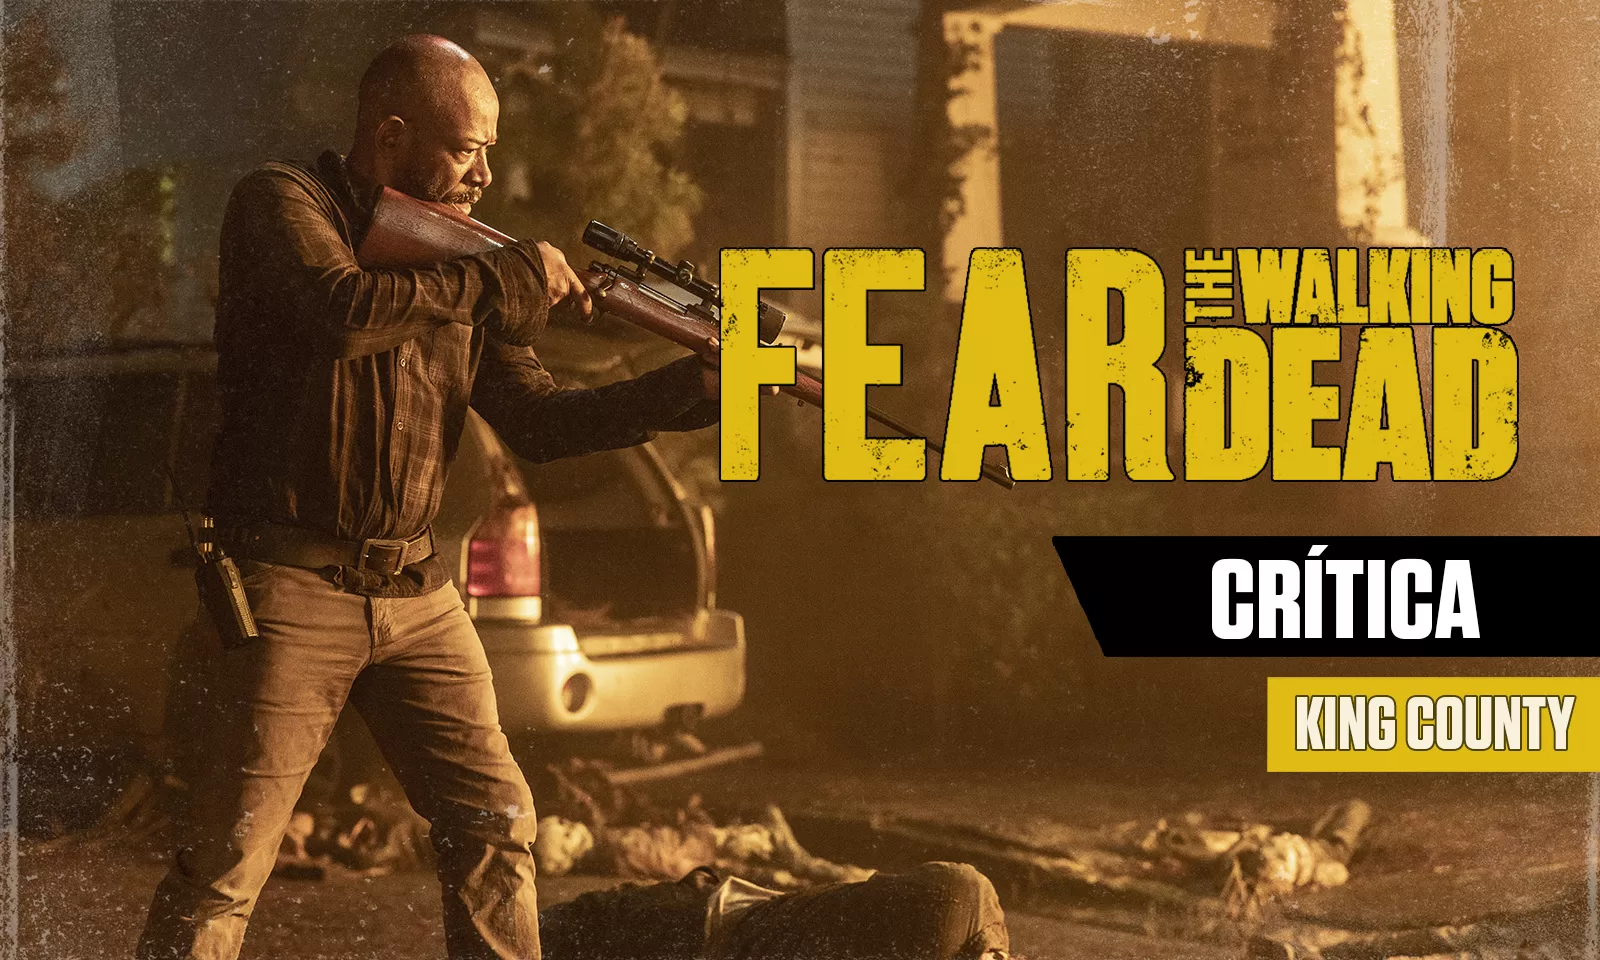 Morgan apontando sua arma em arte da crítica do episódio 4 da 8ª temporada de Fear the Walking Dead.